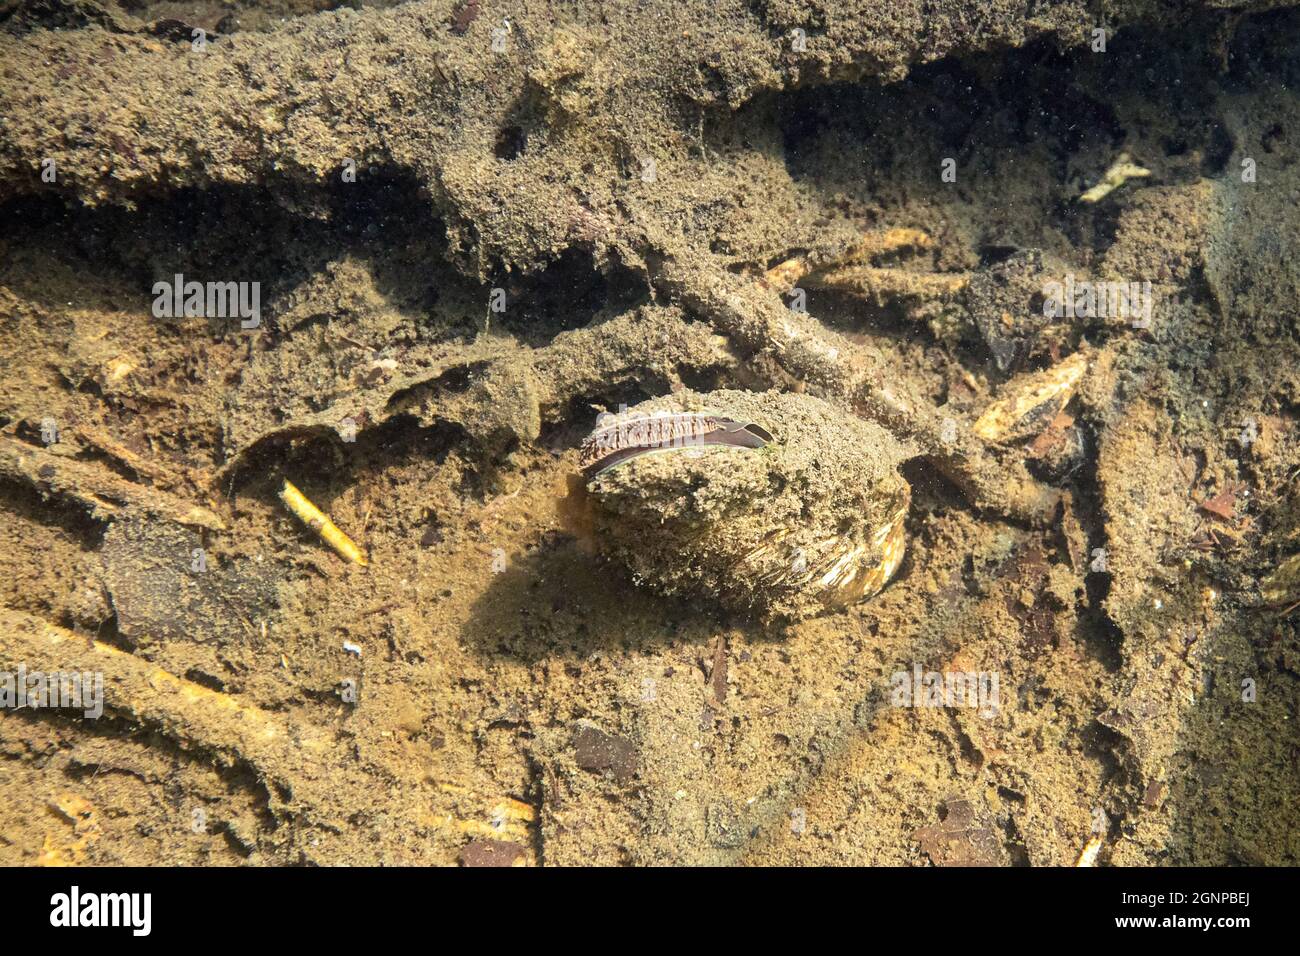 Moule cygnée (Anodonta cygnea), creusée dans un fond de lac boueux, Allemagne, Bavière, Eggstaett-Hemhofer Seenplatte Banque D'Images